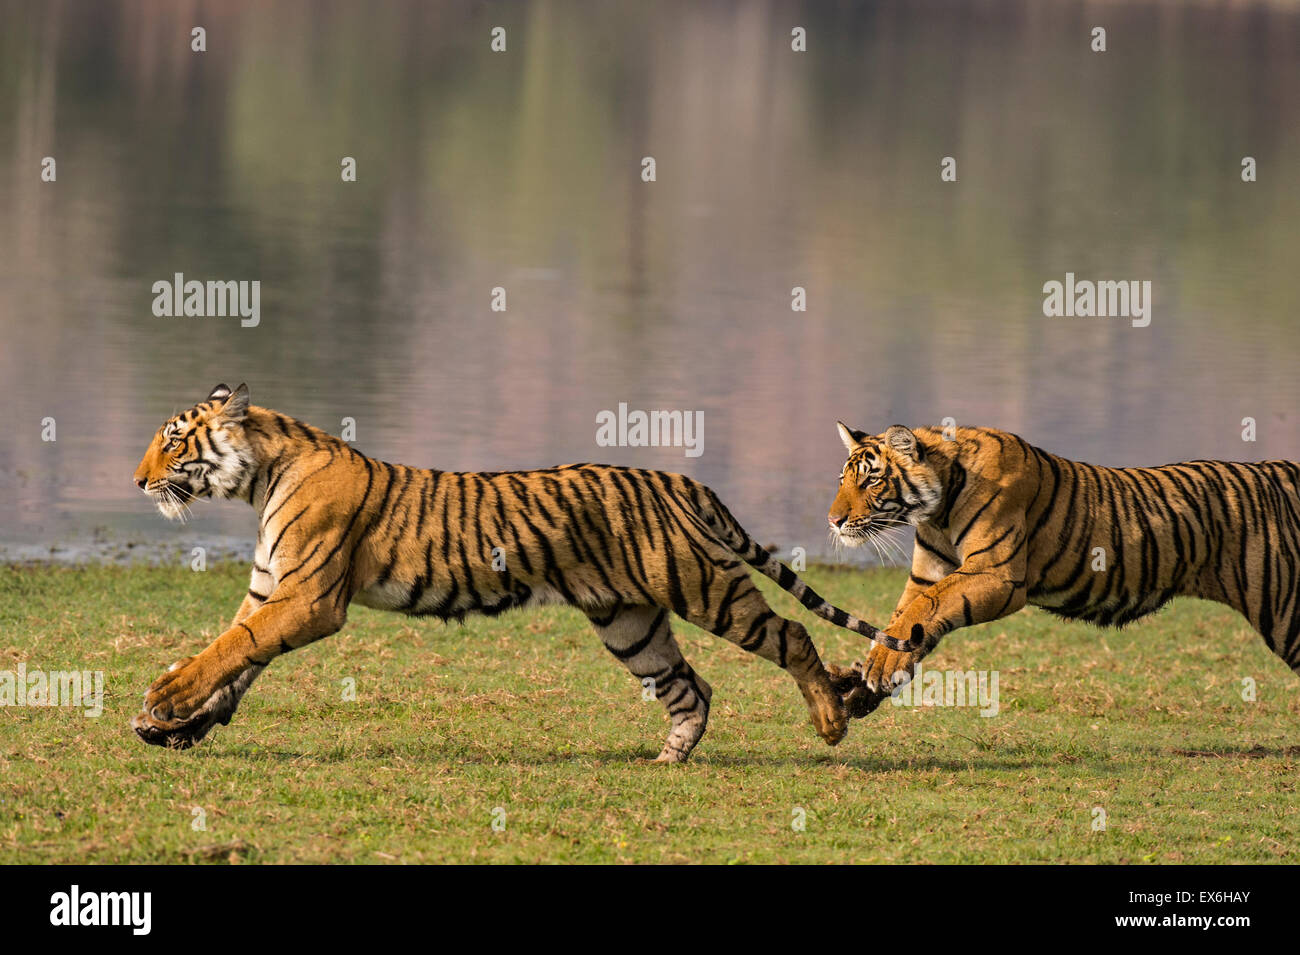 siberian tiger speed